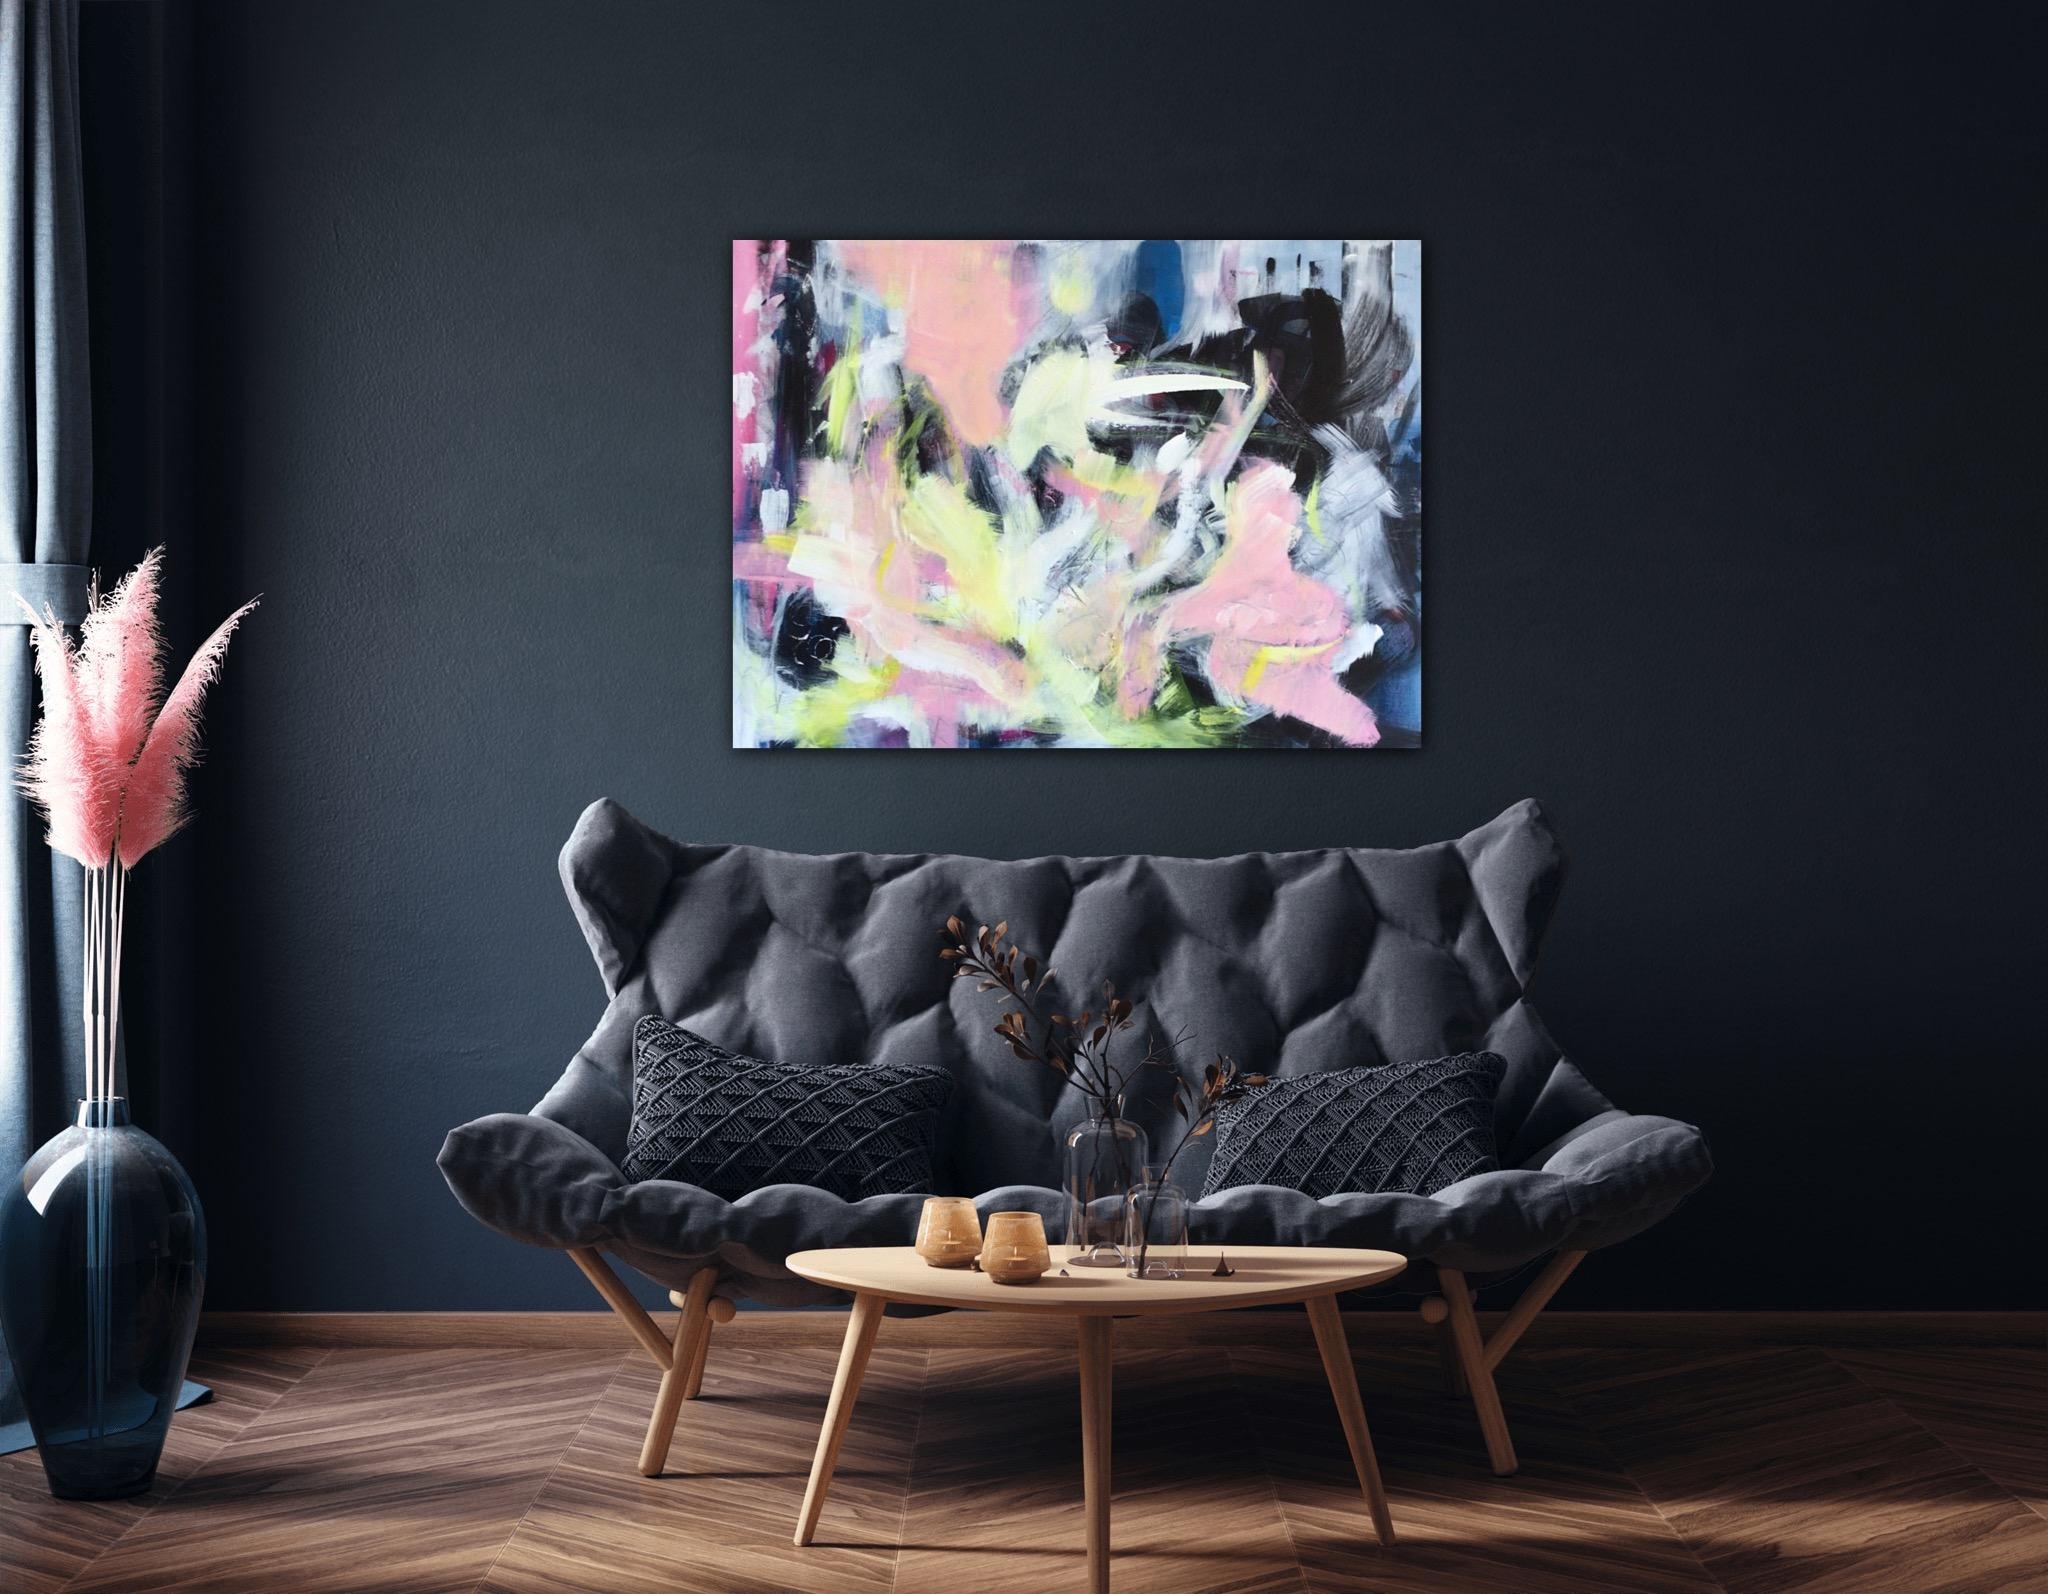 💕 Farbe ins Leben 

#kunst #Farbe #malerei #einrichtung #dekoration #wandgestaltung #couchliebt #couchstyle #interior 